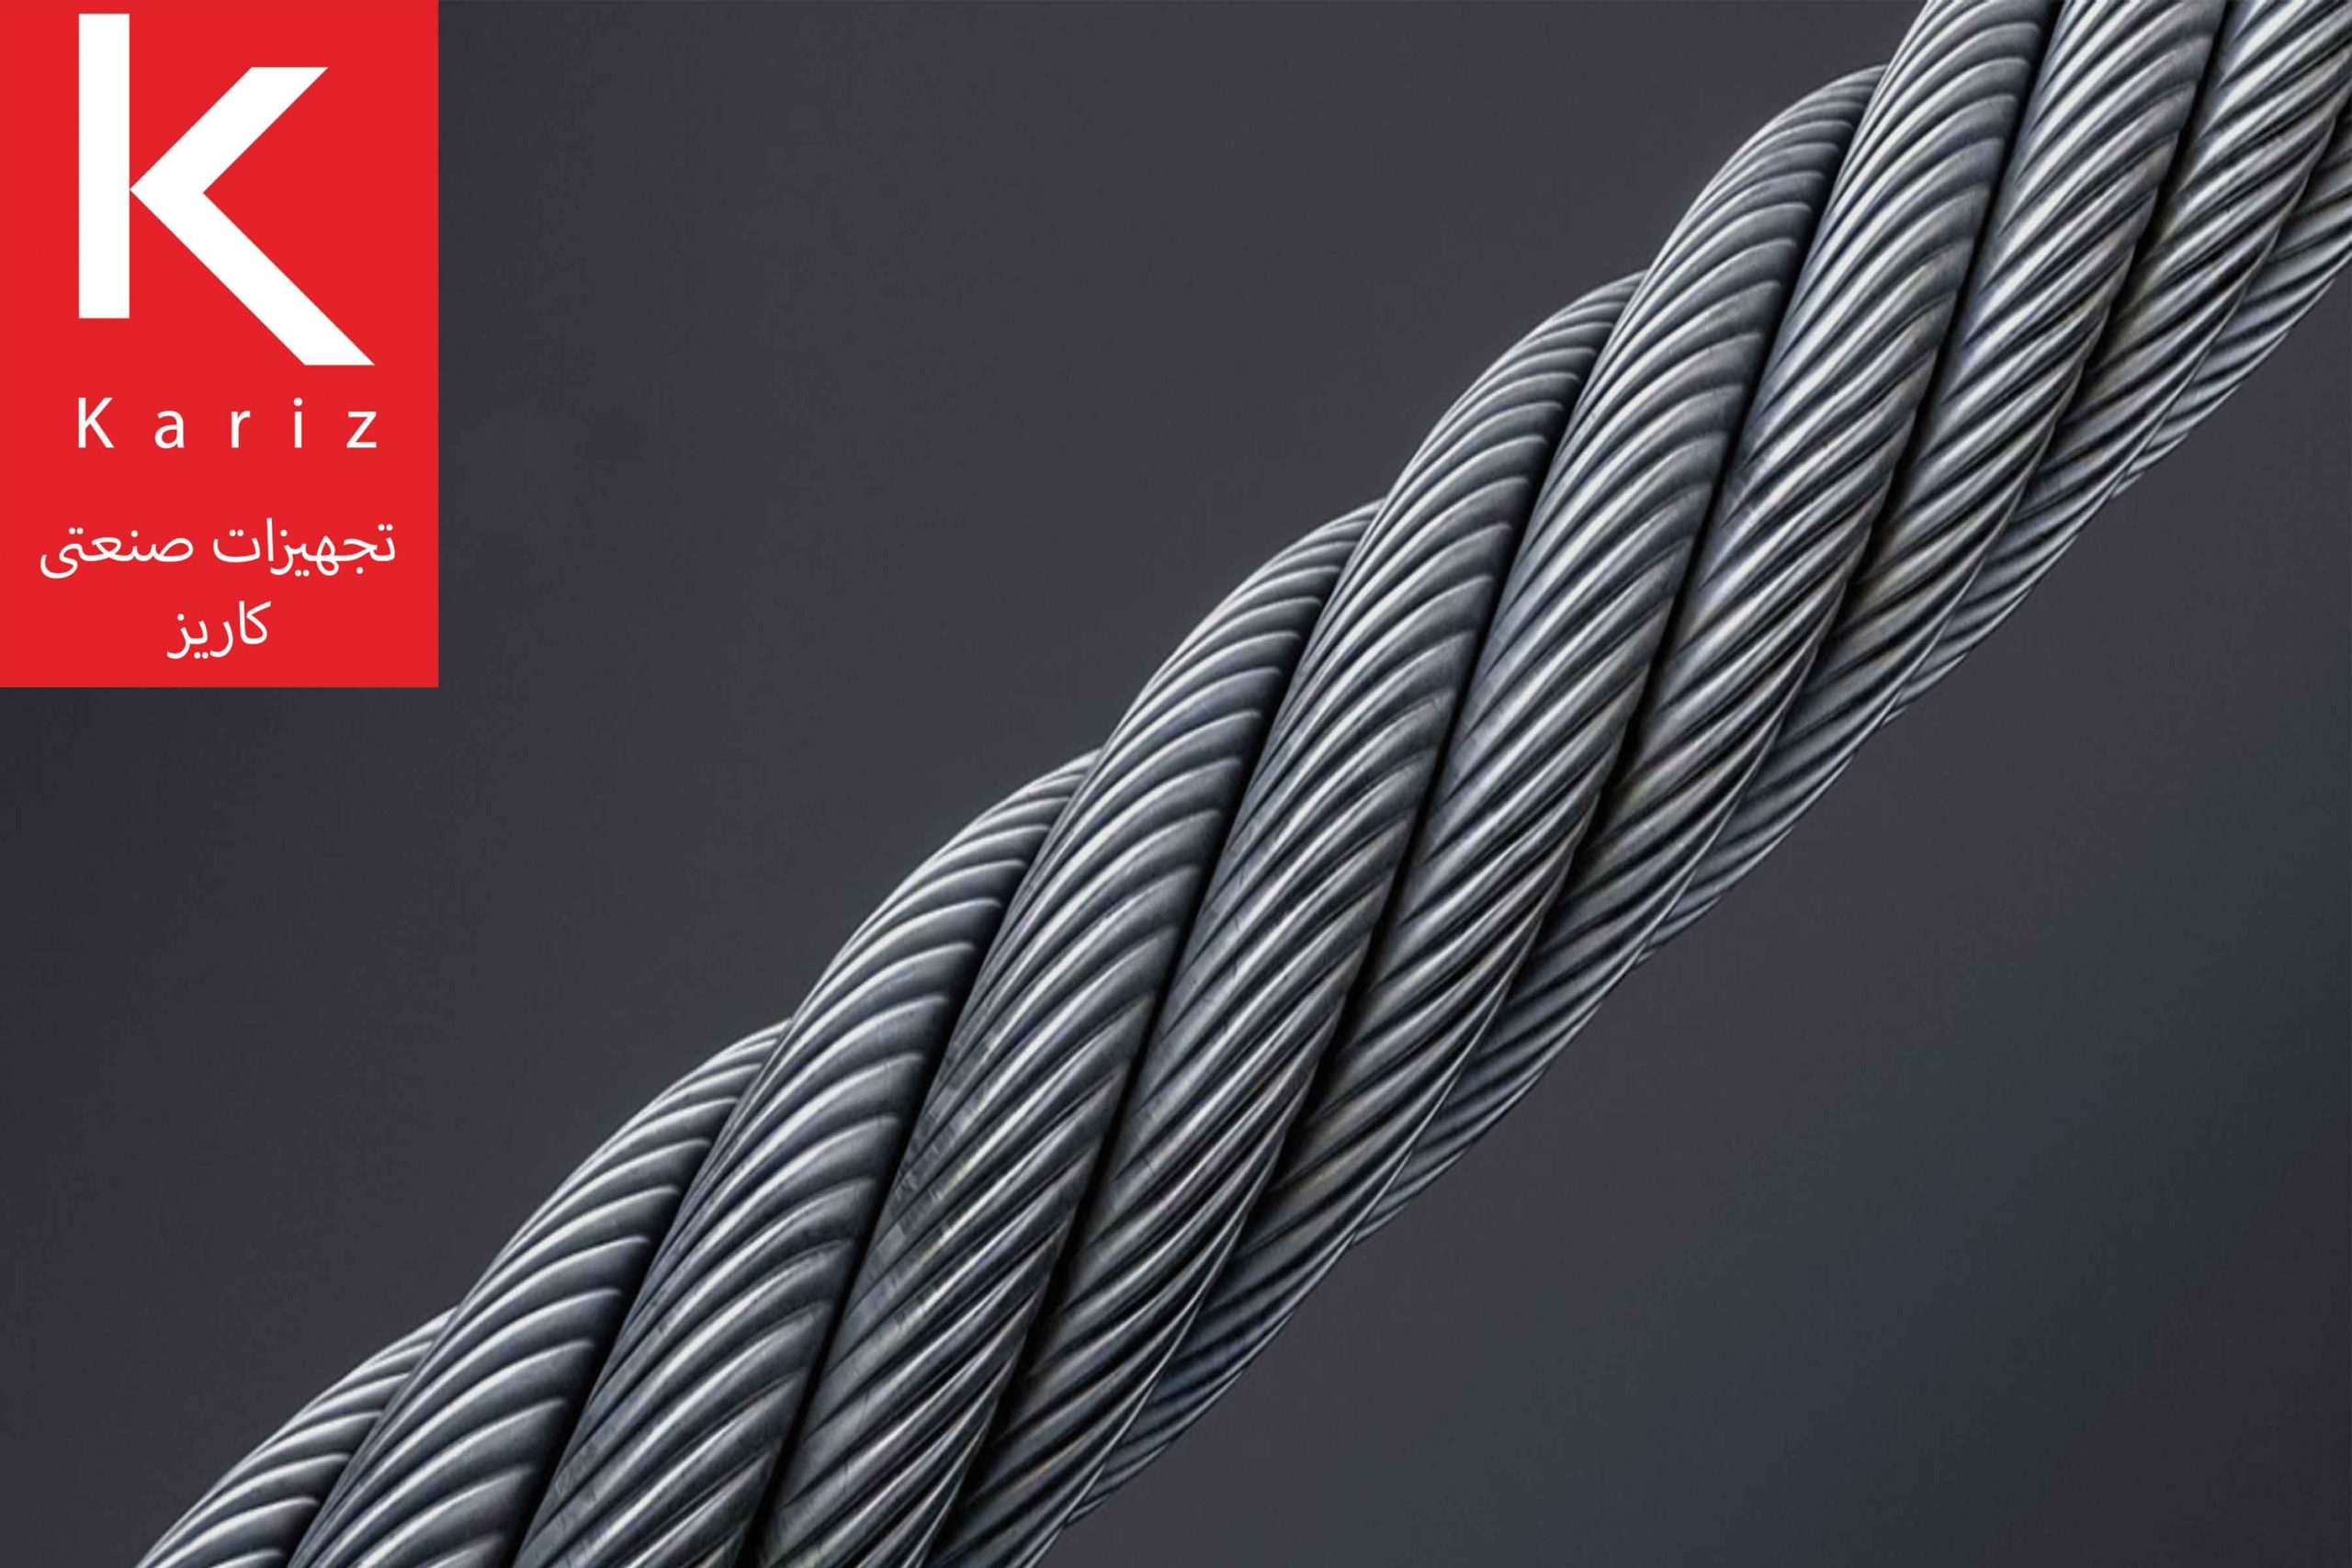 سیم-بکسل-تجهیزات-صنعتی-کاریز-steel-wire-rope-kariz-industrial-equipment2